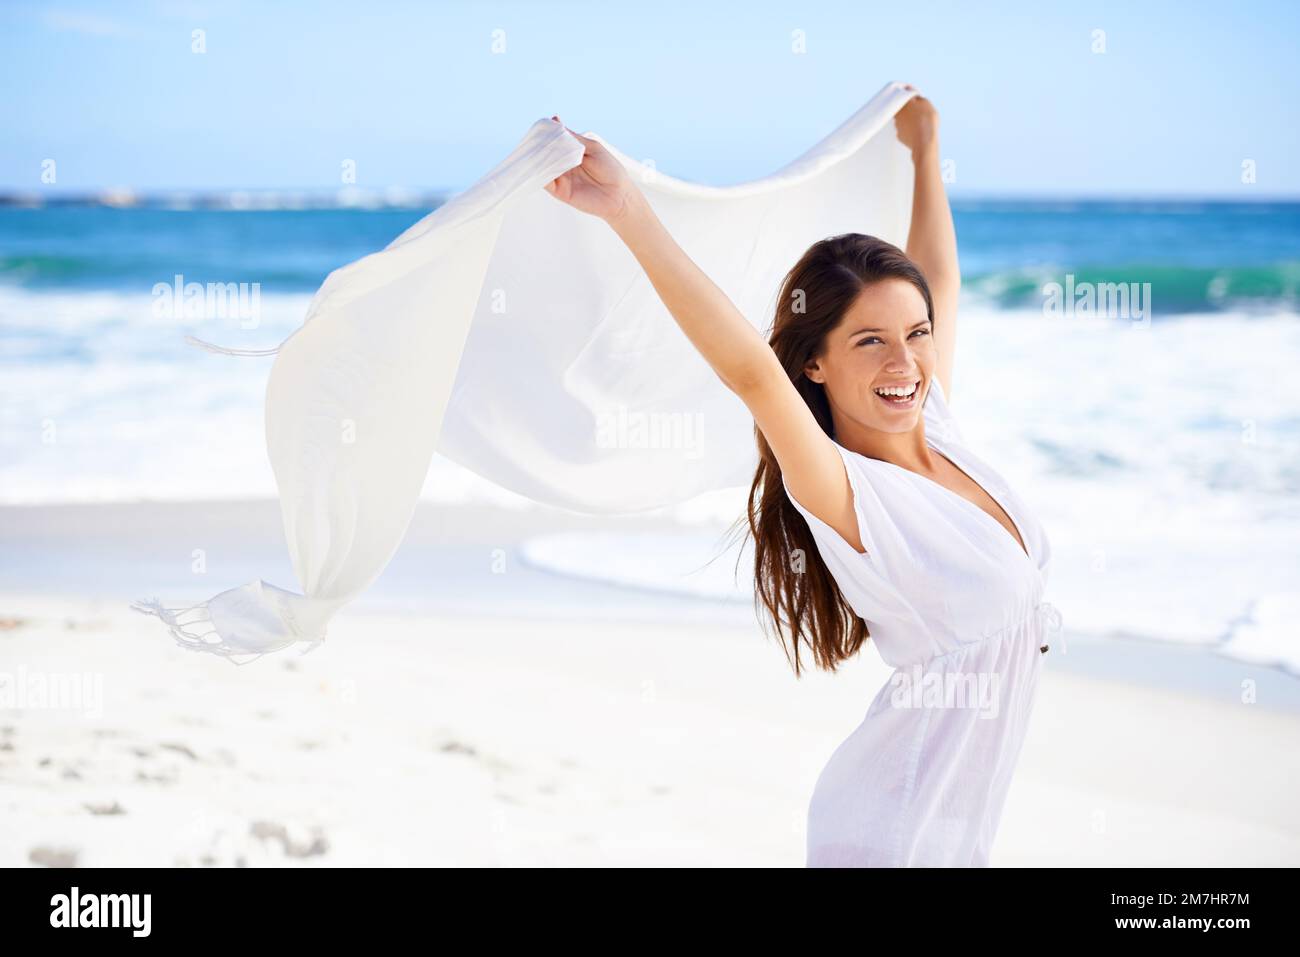 Sommerstil. Eine wunderschöne junge Frau am Strand mit einem weißen Schal, der im Wind weht. Stockfoto